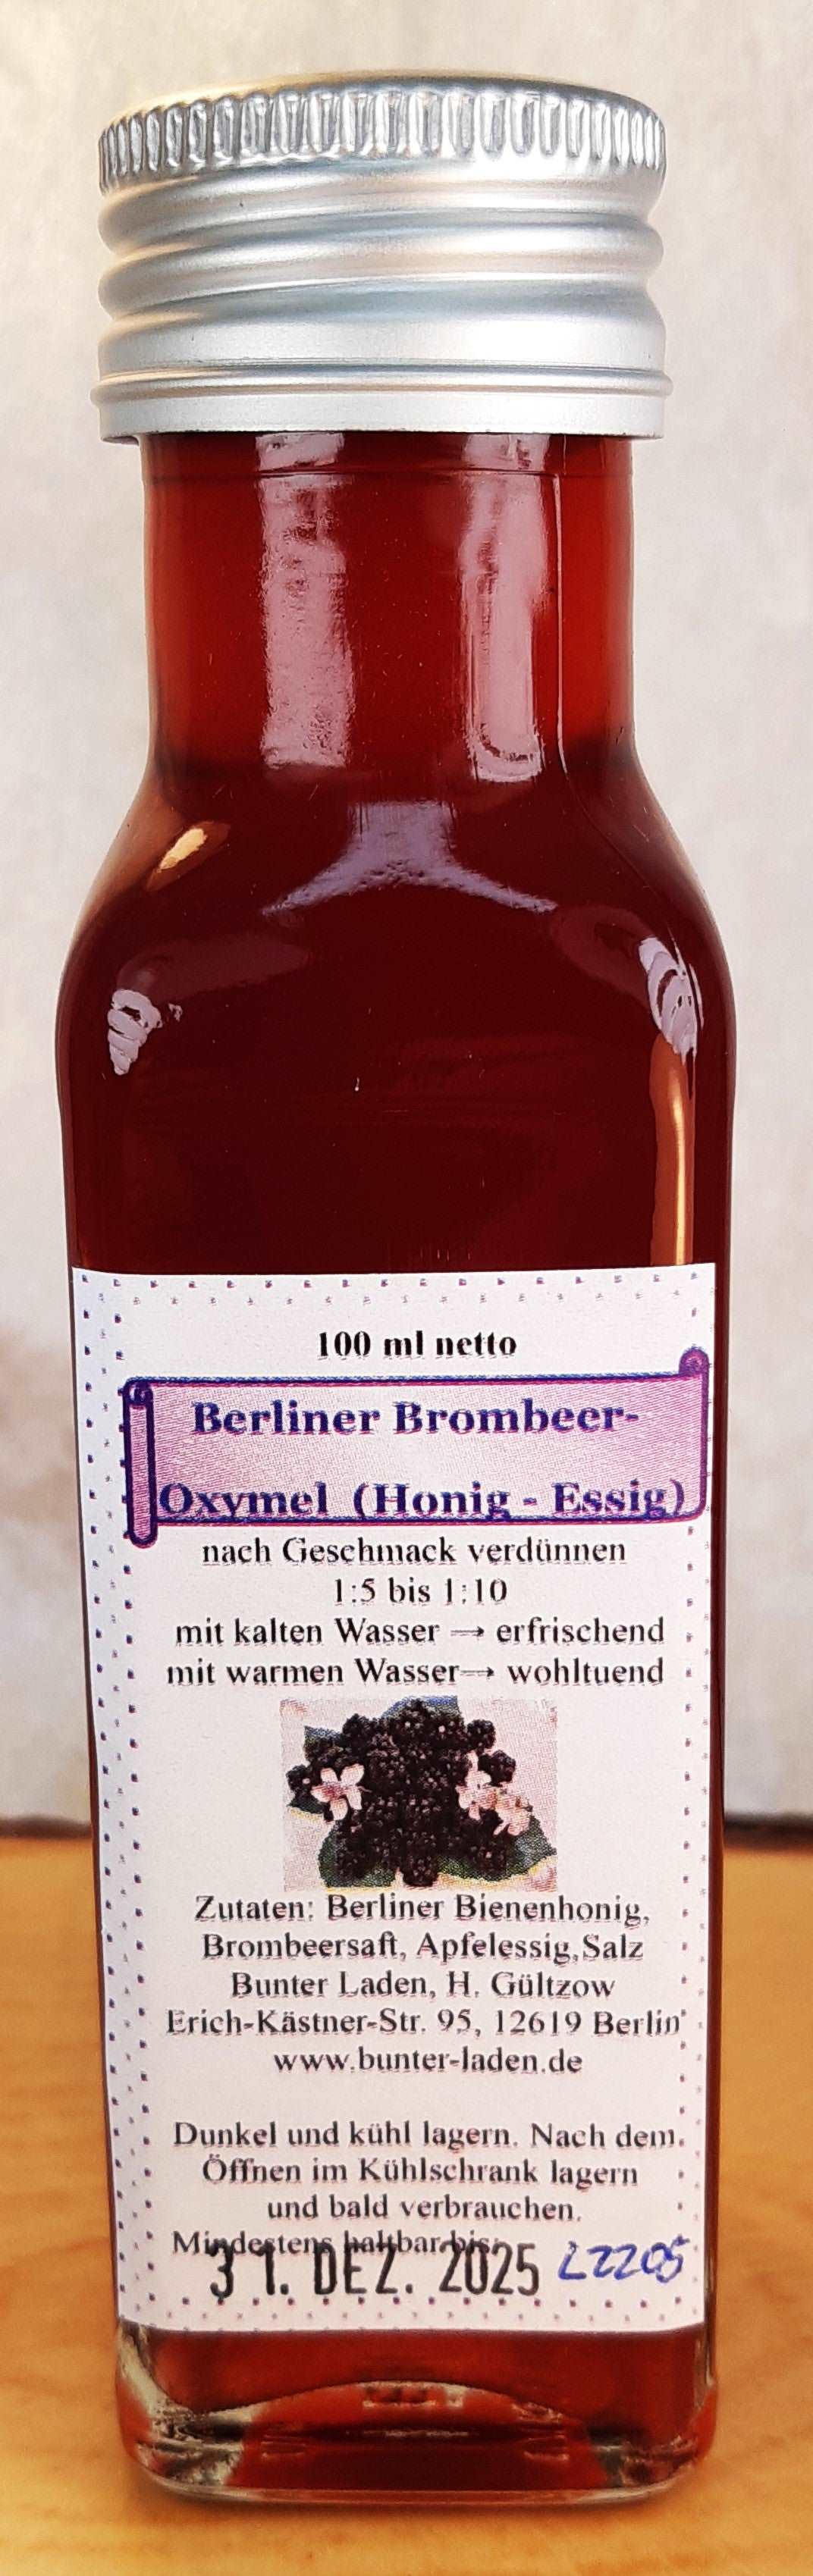 Brombeer Oxymel, Honig-Essig, Sauerhonig Berliner Spezialität, 100ml - Berliner Spezialitäten